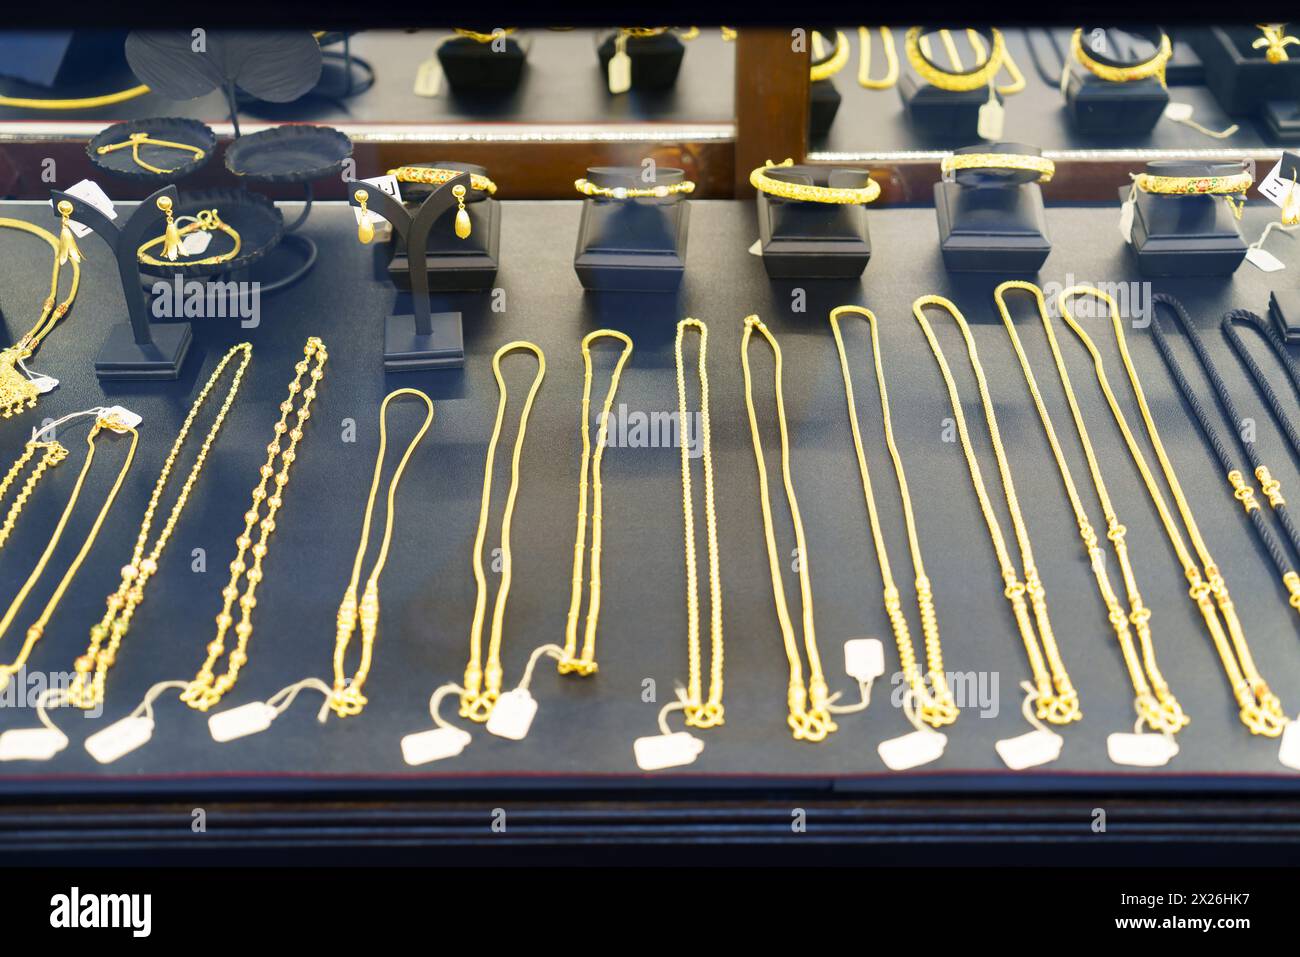 Découvrez l'attrait de l'opulence de près avec une vue détaillée des colliers, bagues et chaînes en or élégamment présentés dans un magasin de beauté Wind Banque D'Images